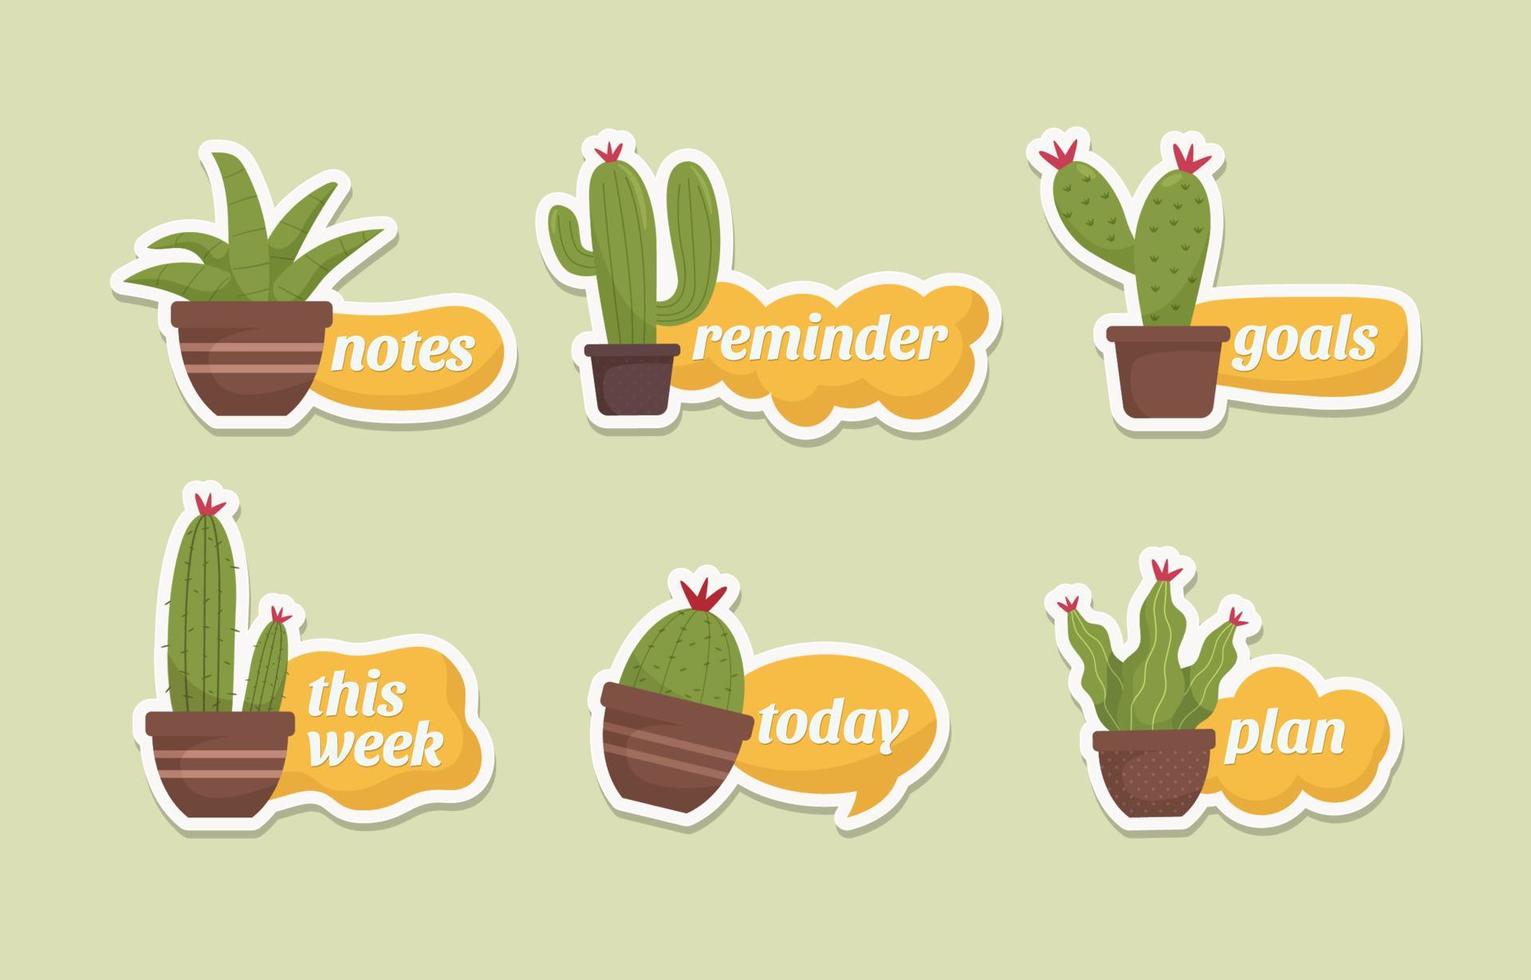 Kaktus-Themen-Journaling-Sticker-Set vektor